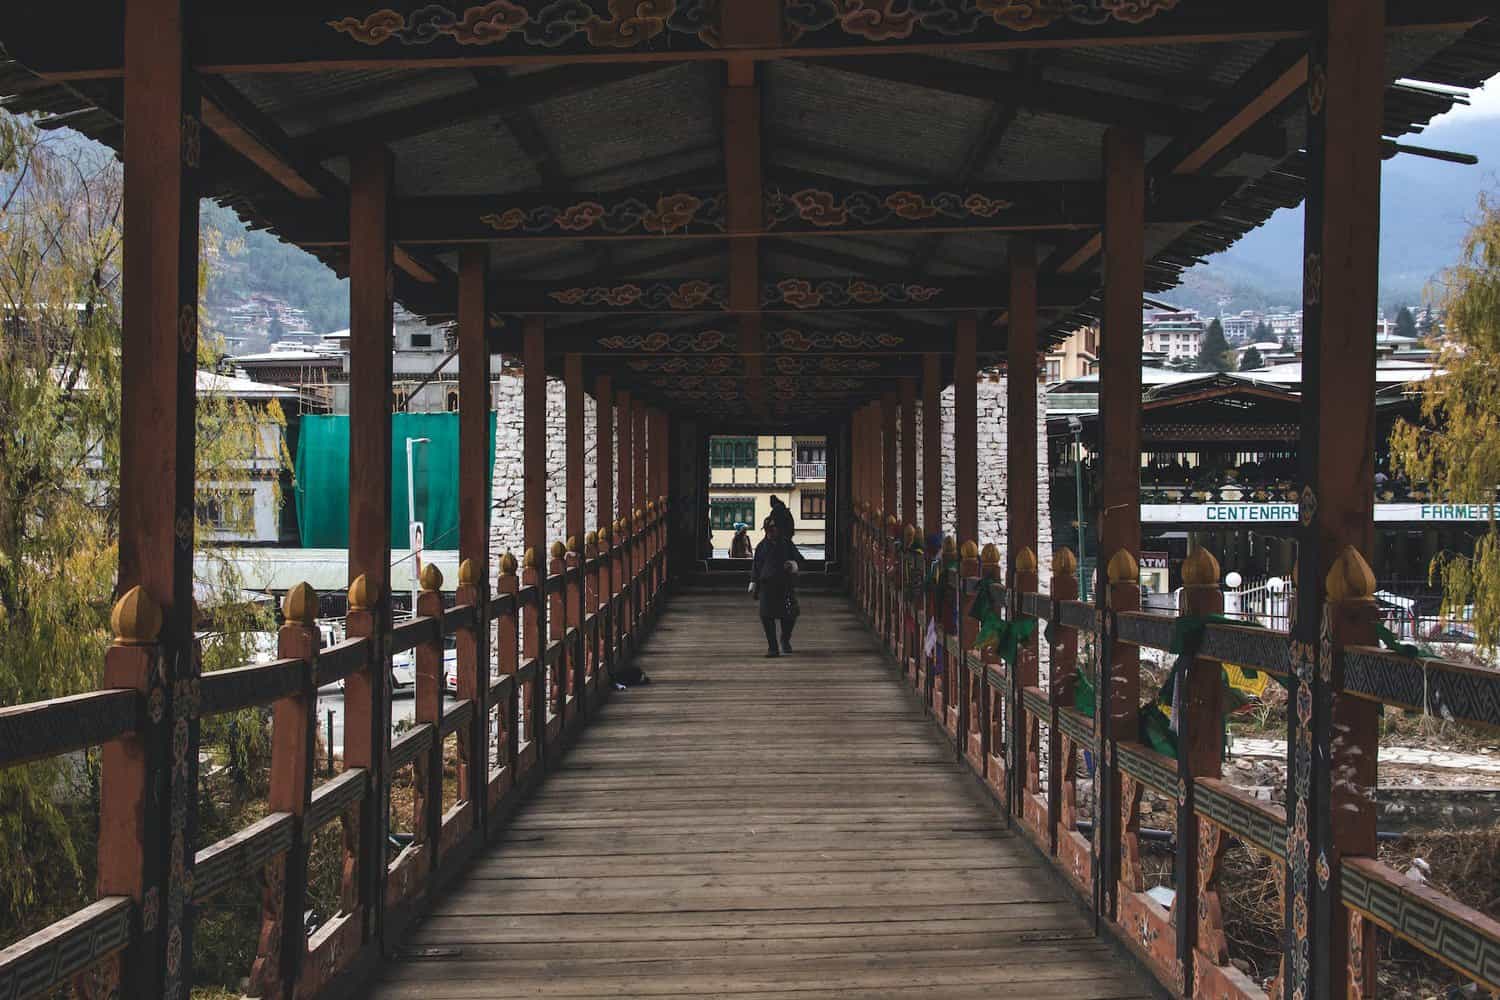 person in black jacket walking on wooden bridge